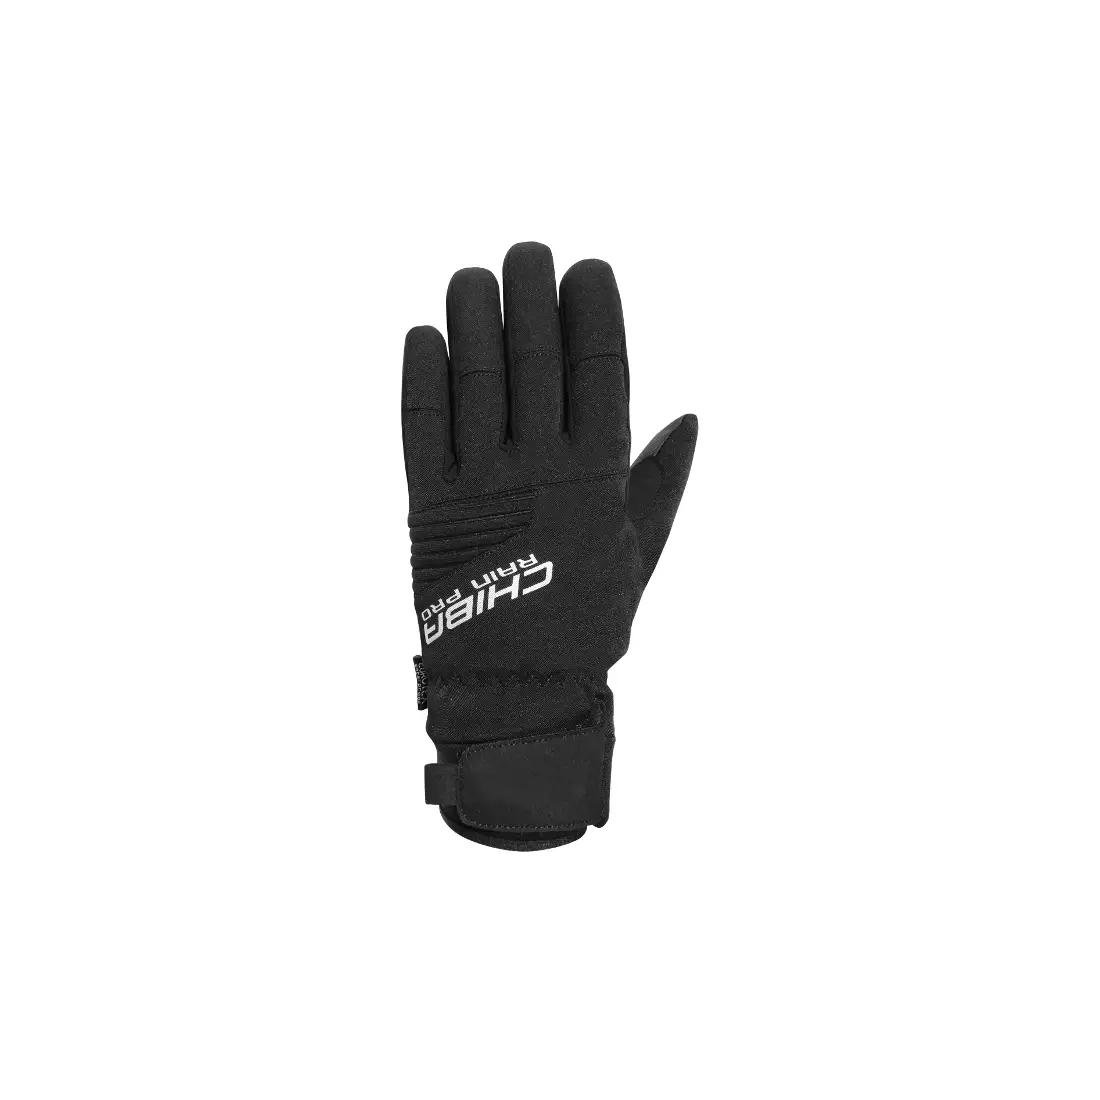 CHIBA RAIN TOUCH zimní cyklistické rukavice, černá 3120018